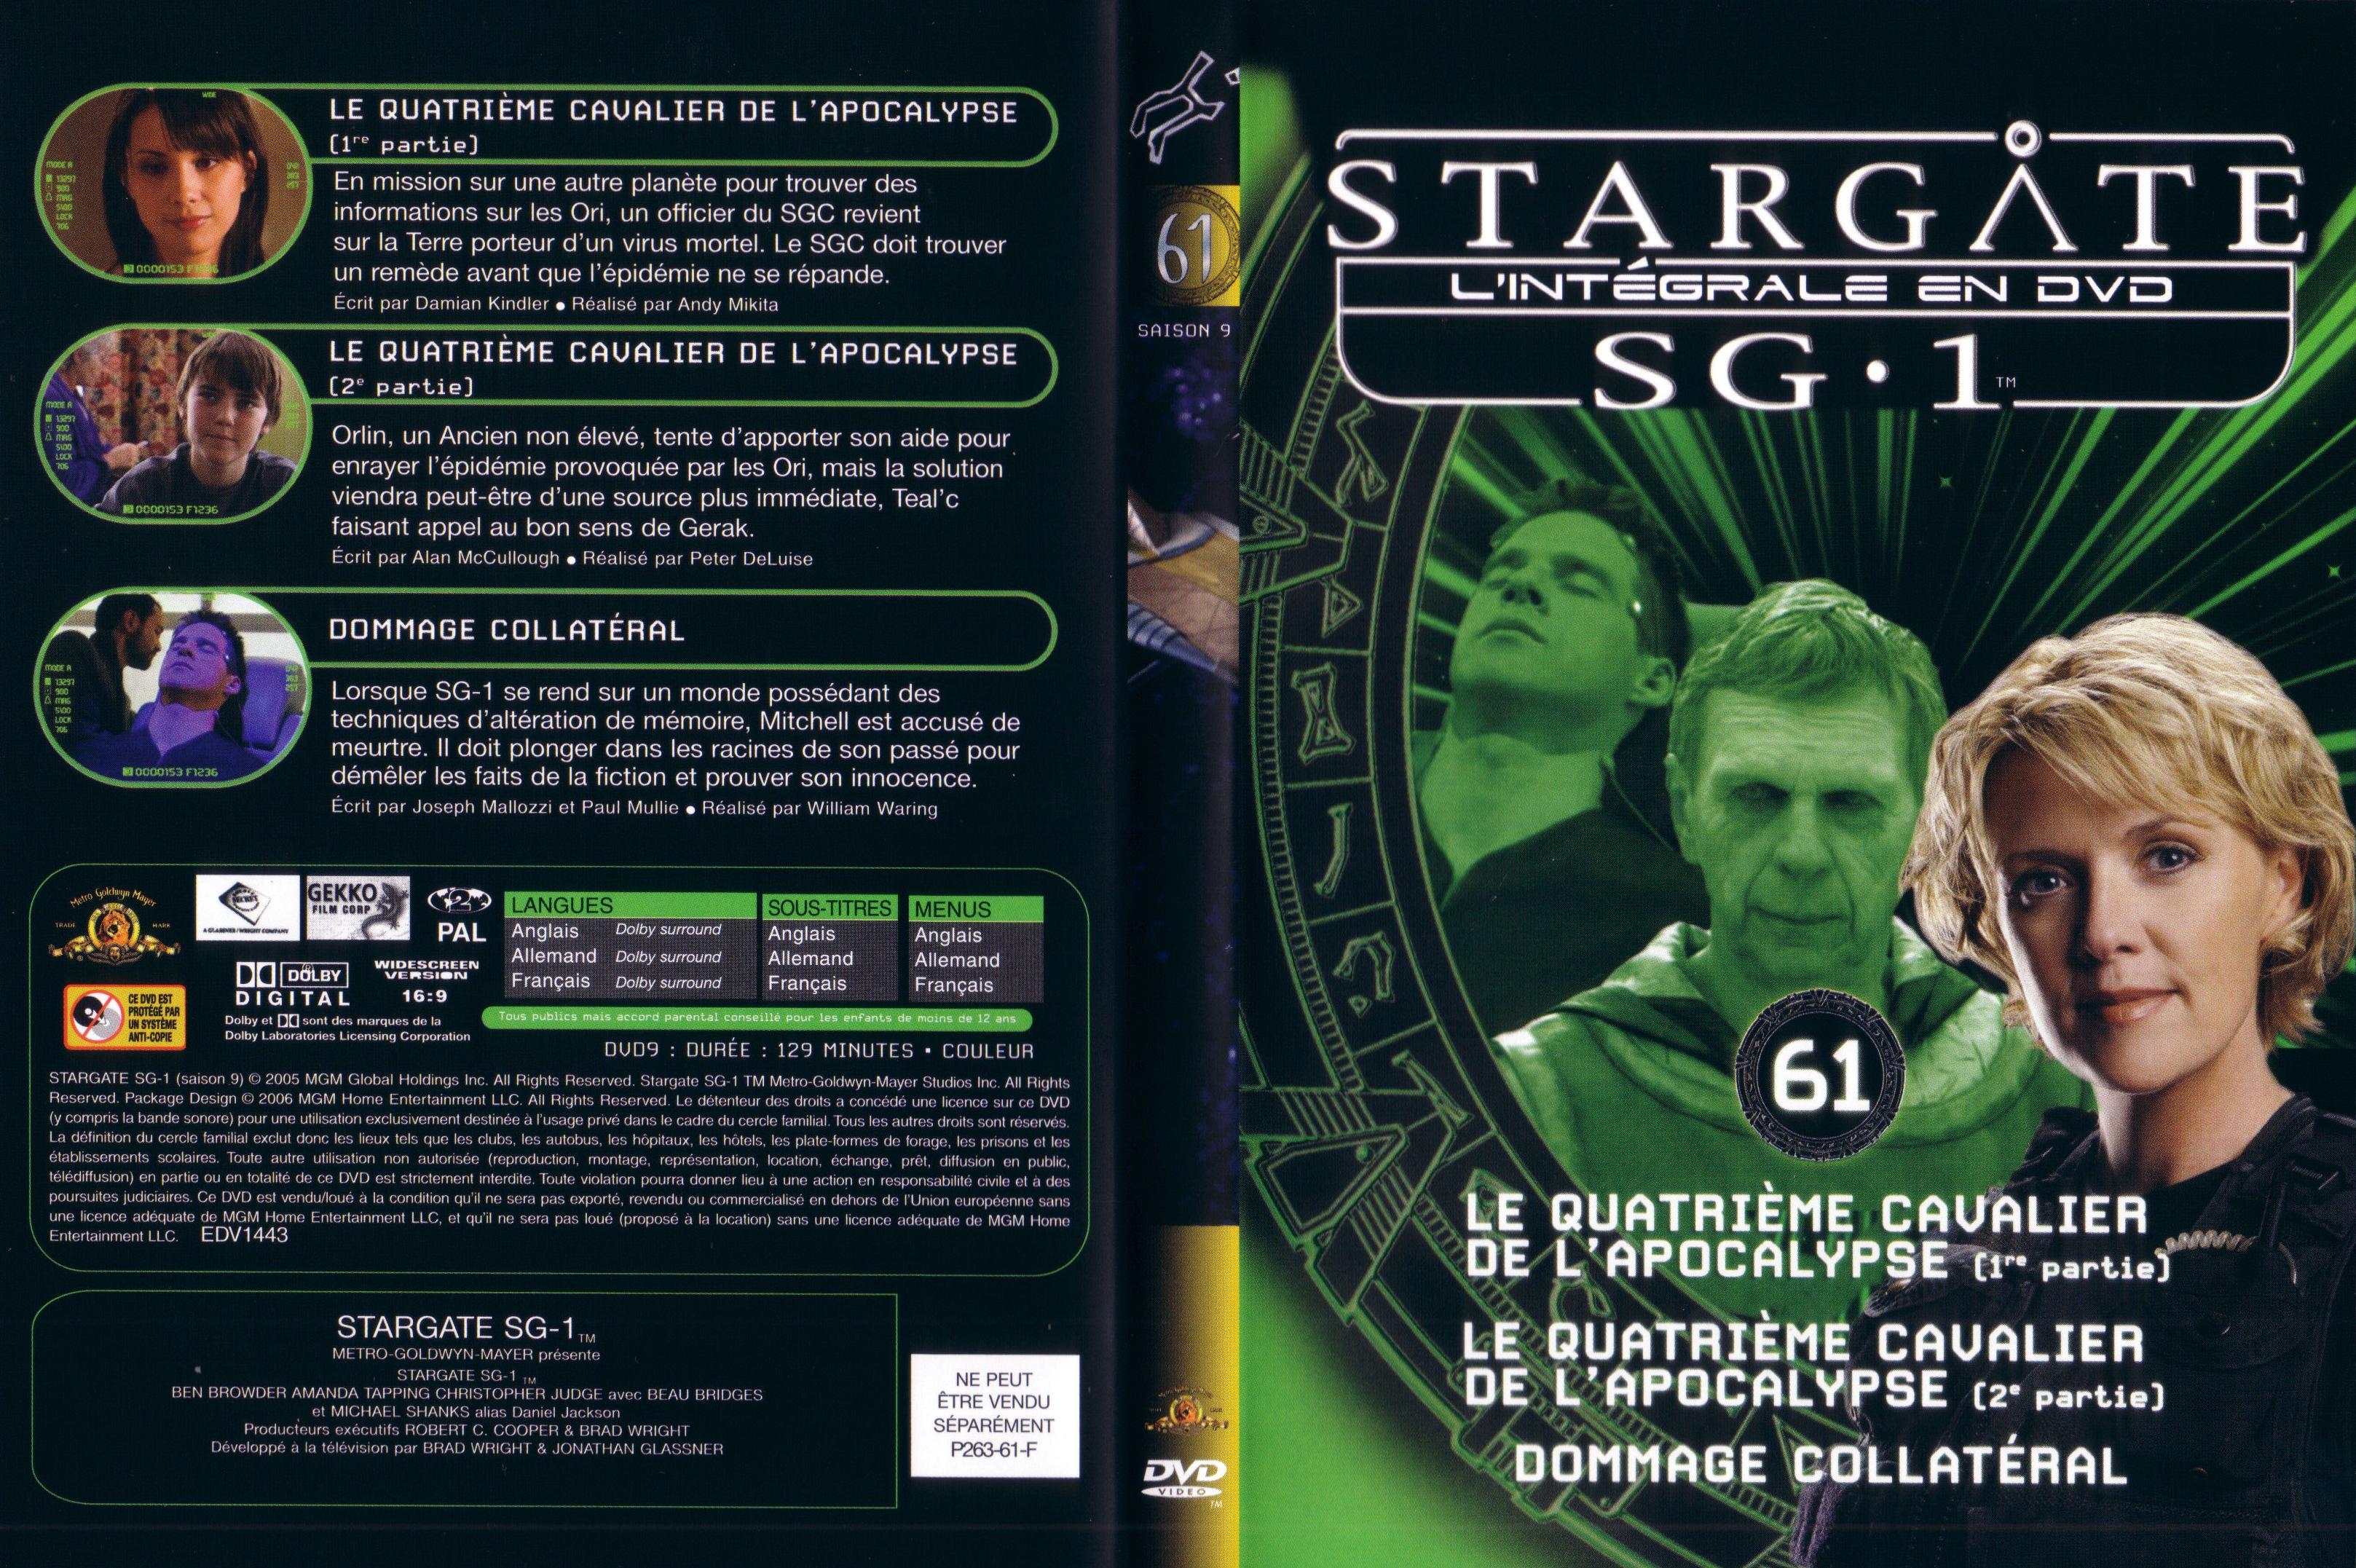 Jaquette DVD Stargate saison 9 vol 61